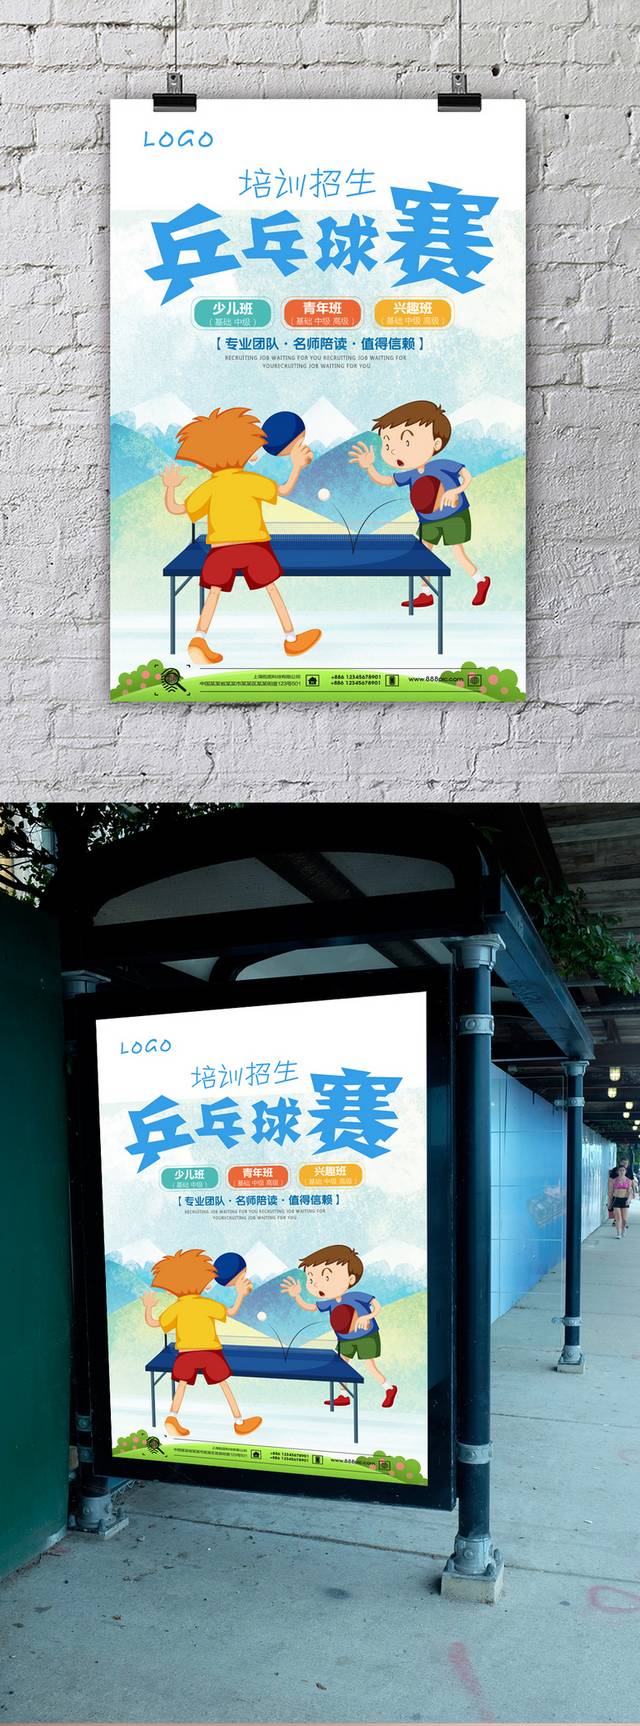 乒乓球赛宣传海报模板